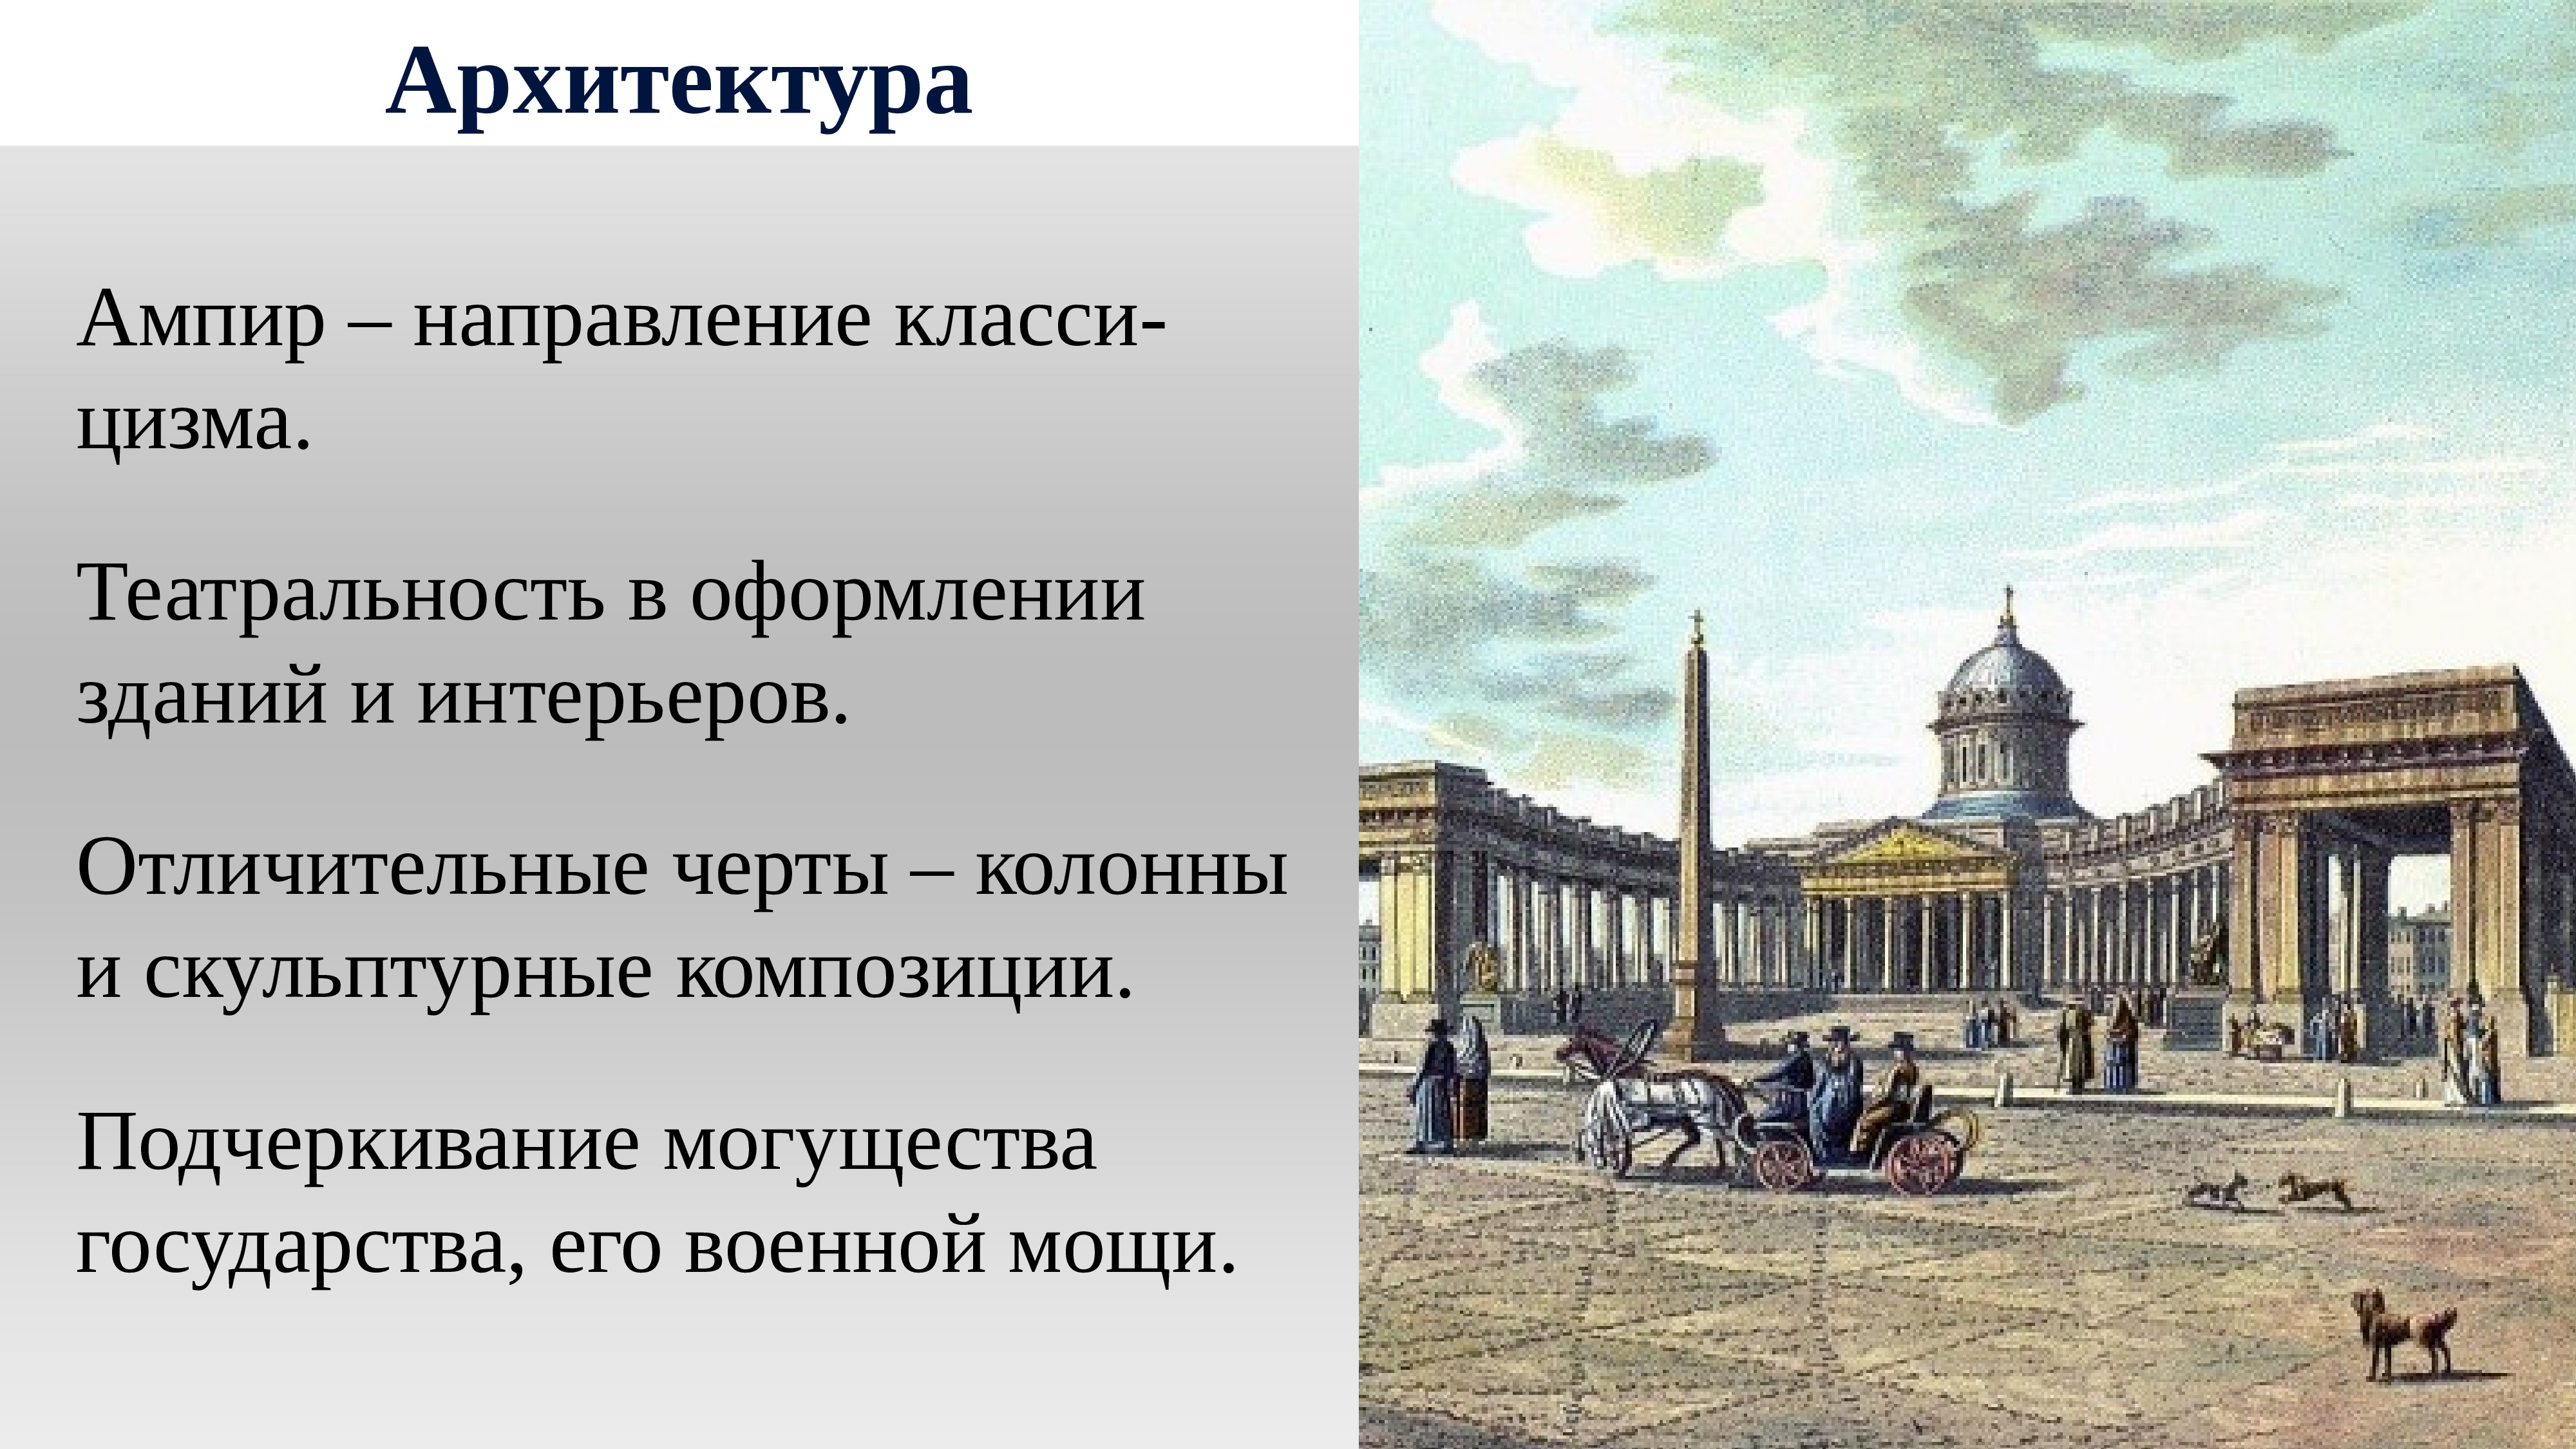 Архитектура 19 века Россия первой половины 19 века